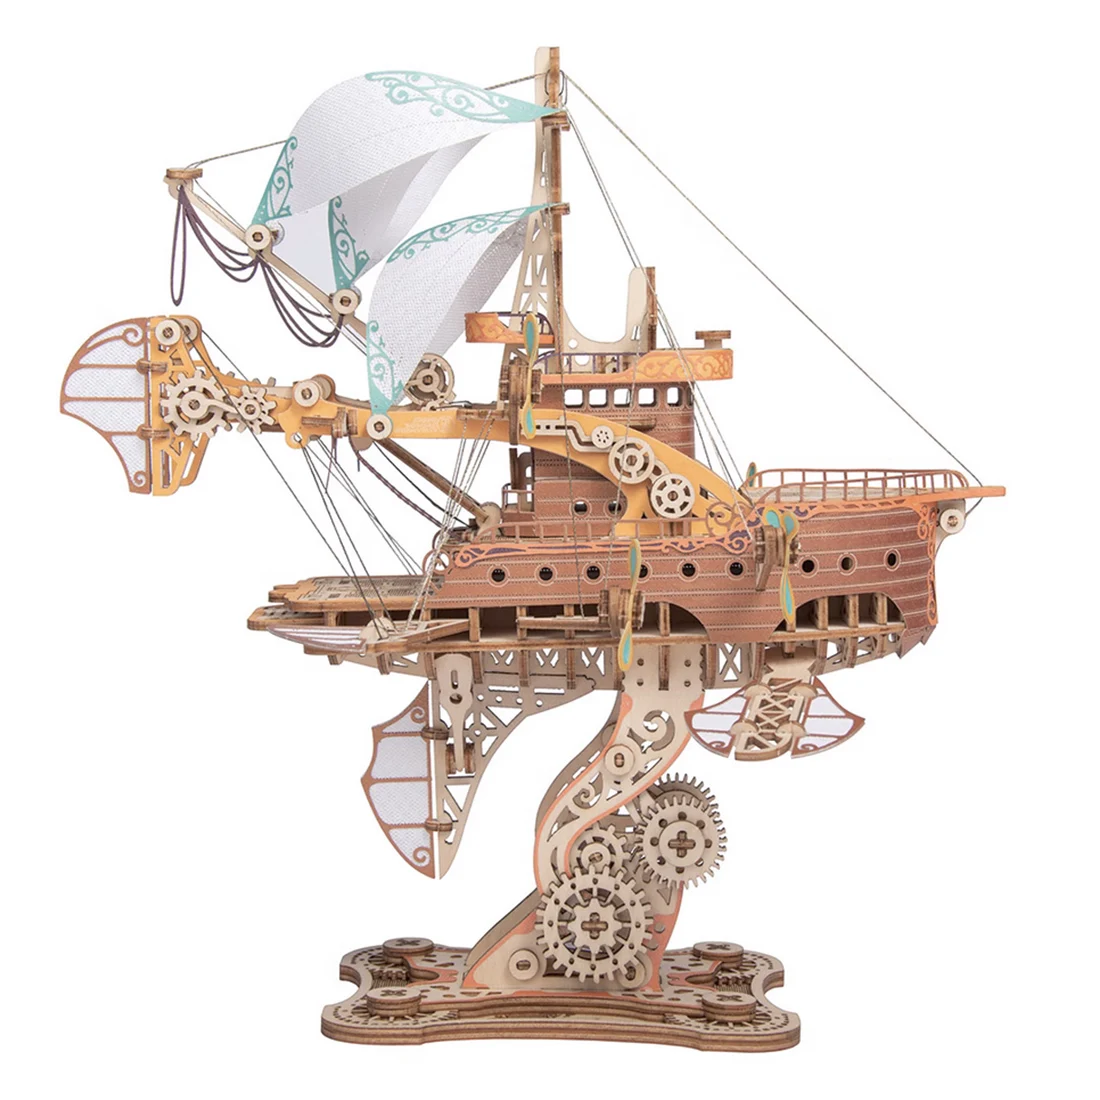 

DIY Fantasy Spaceship Handicraft Masterpiece "Le Tour du Monde en Quatre-vingts Jours" 3D Steampunk Puzzle Toy Model